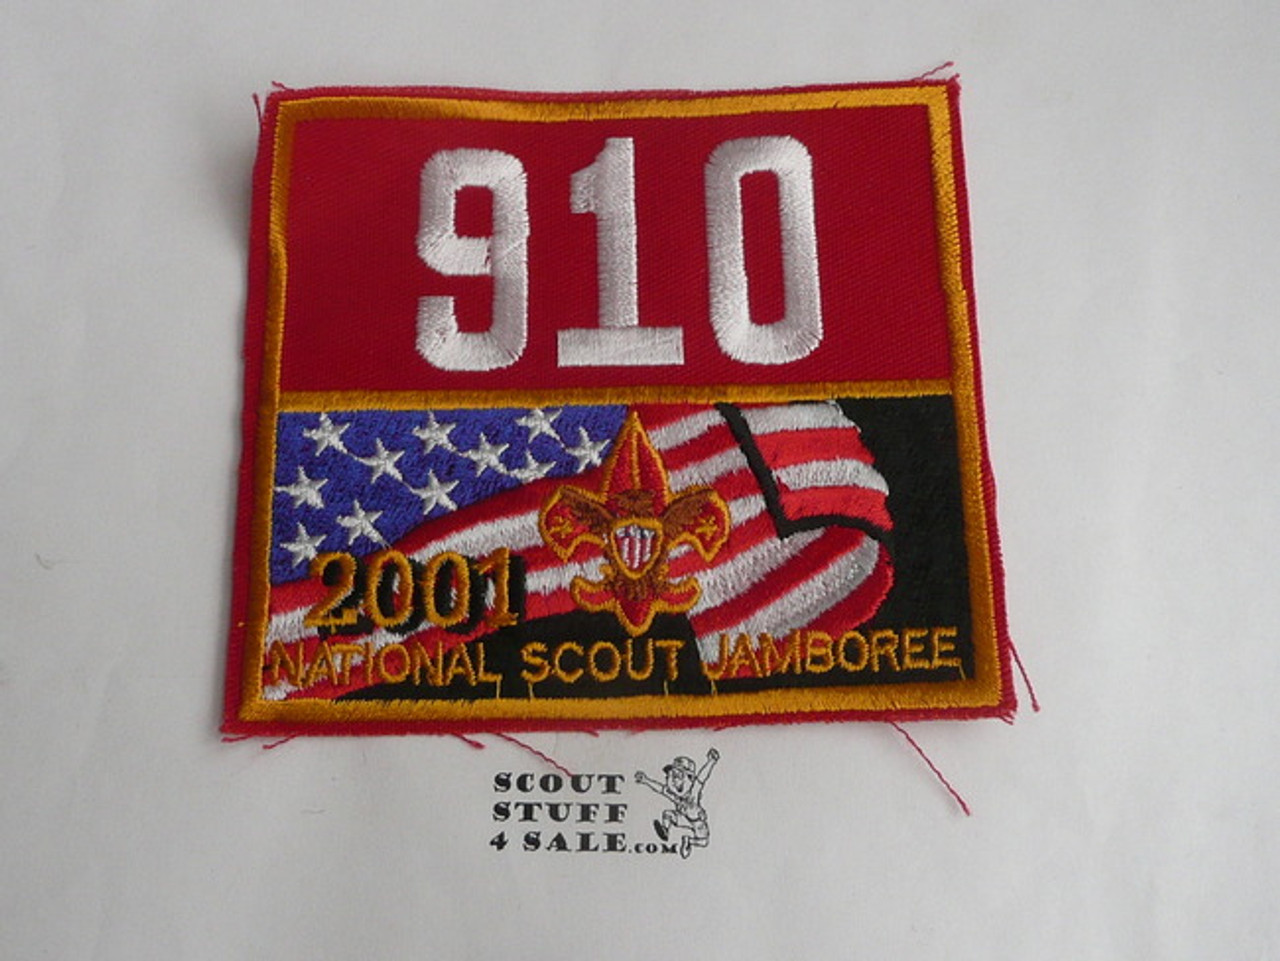 2001 National Jamboree Troop 910 Unit Number, Denver Area Council Troop